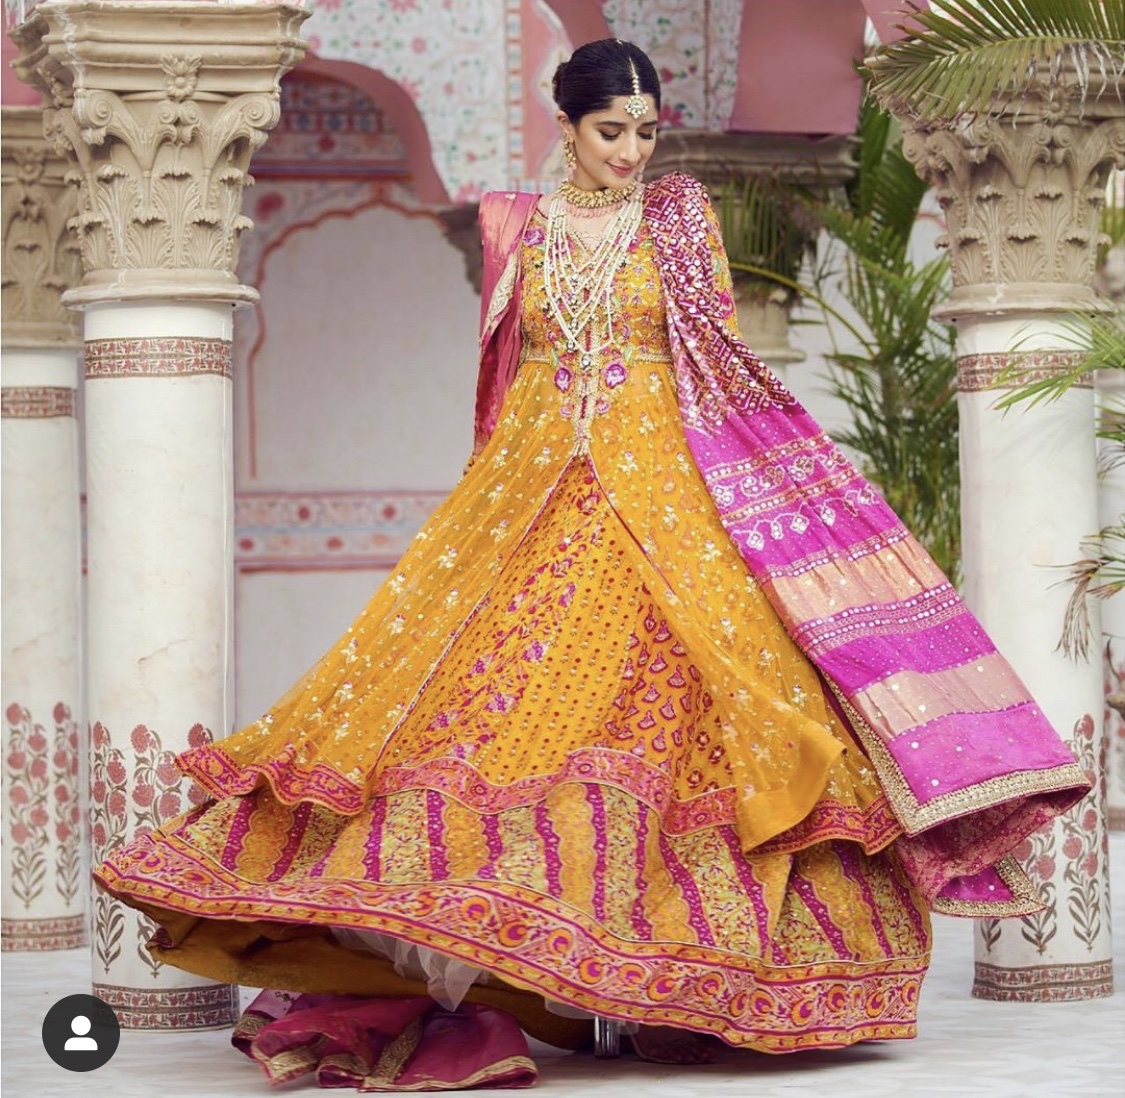 Bridal inspiration for upcoming shadi season